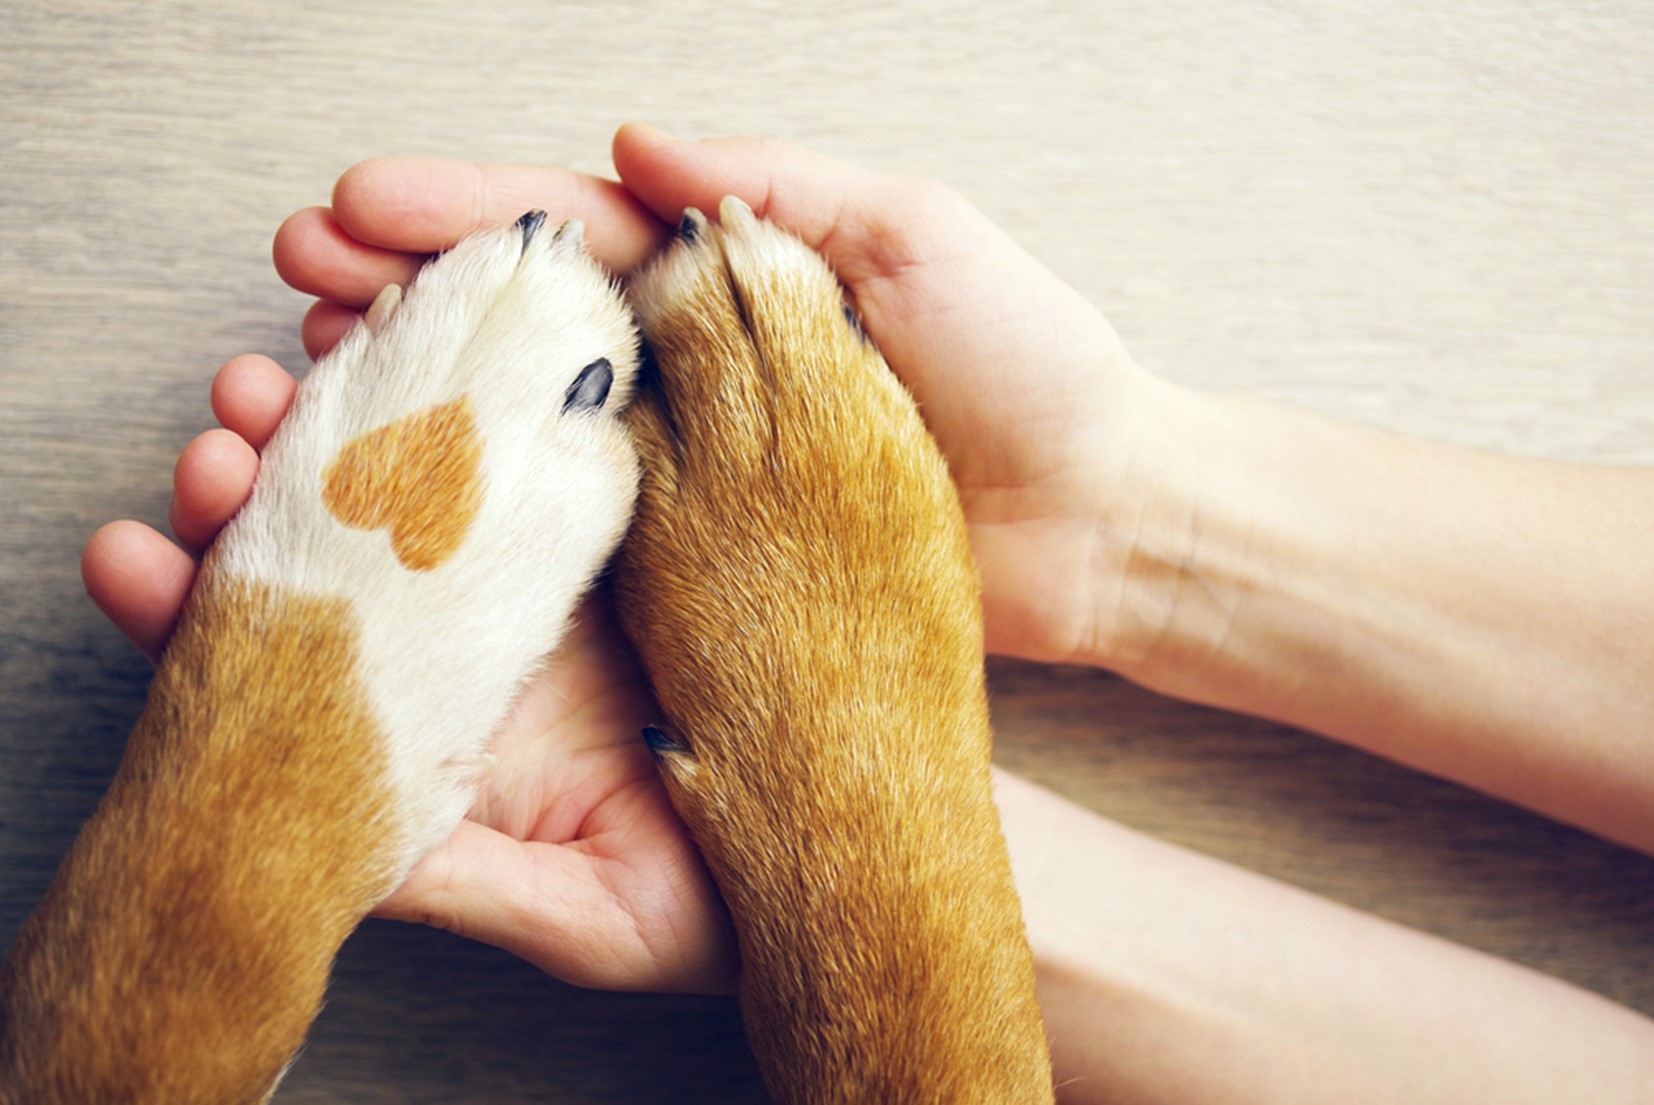 Srce na pasji tački in razprte dlani, ki ponazarjajo prijateljstvo, zaupanje in ljubezen.